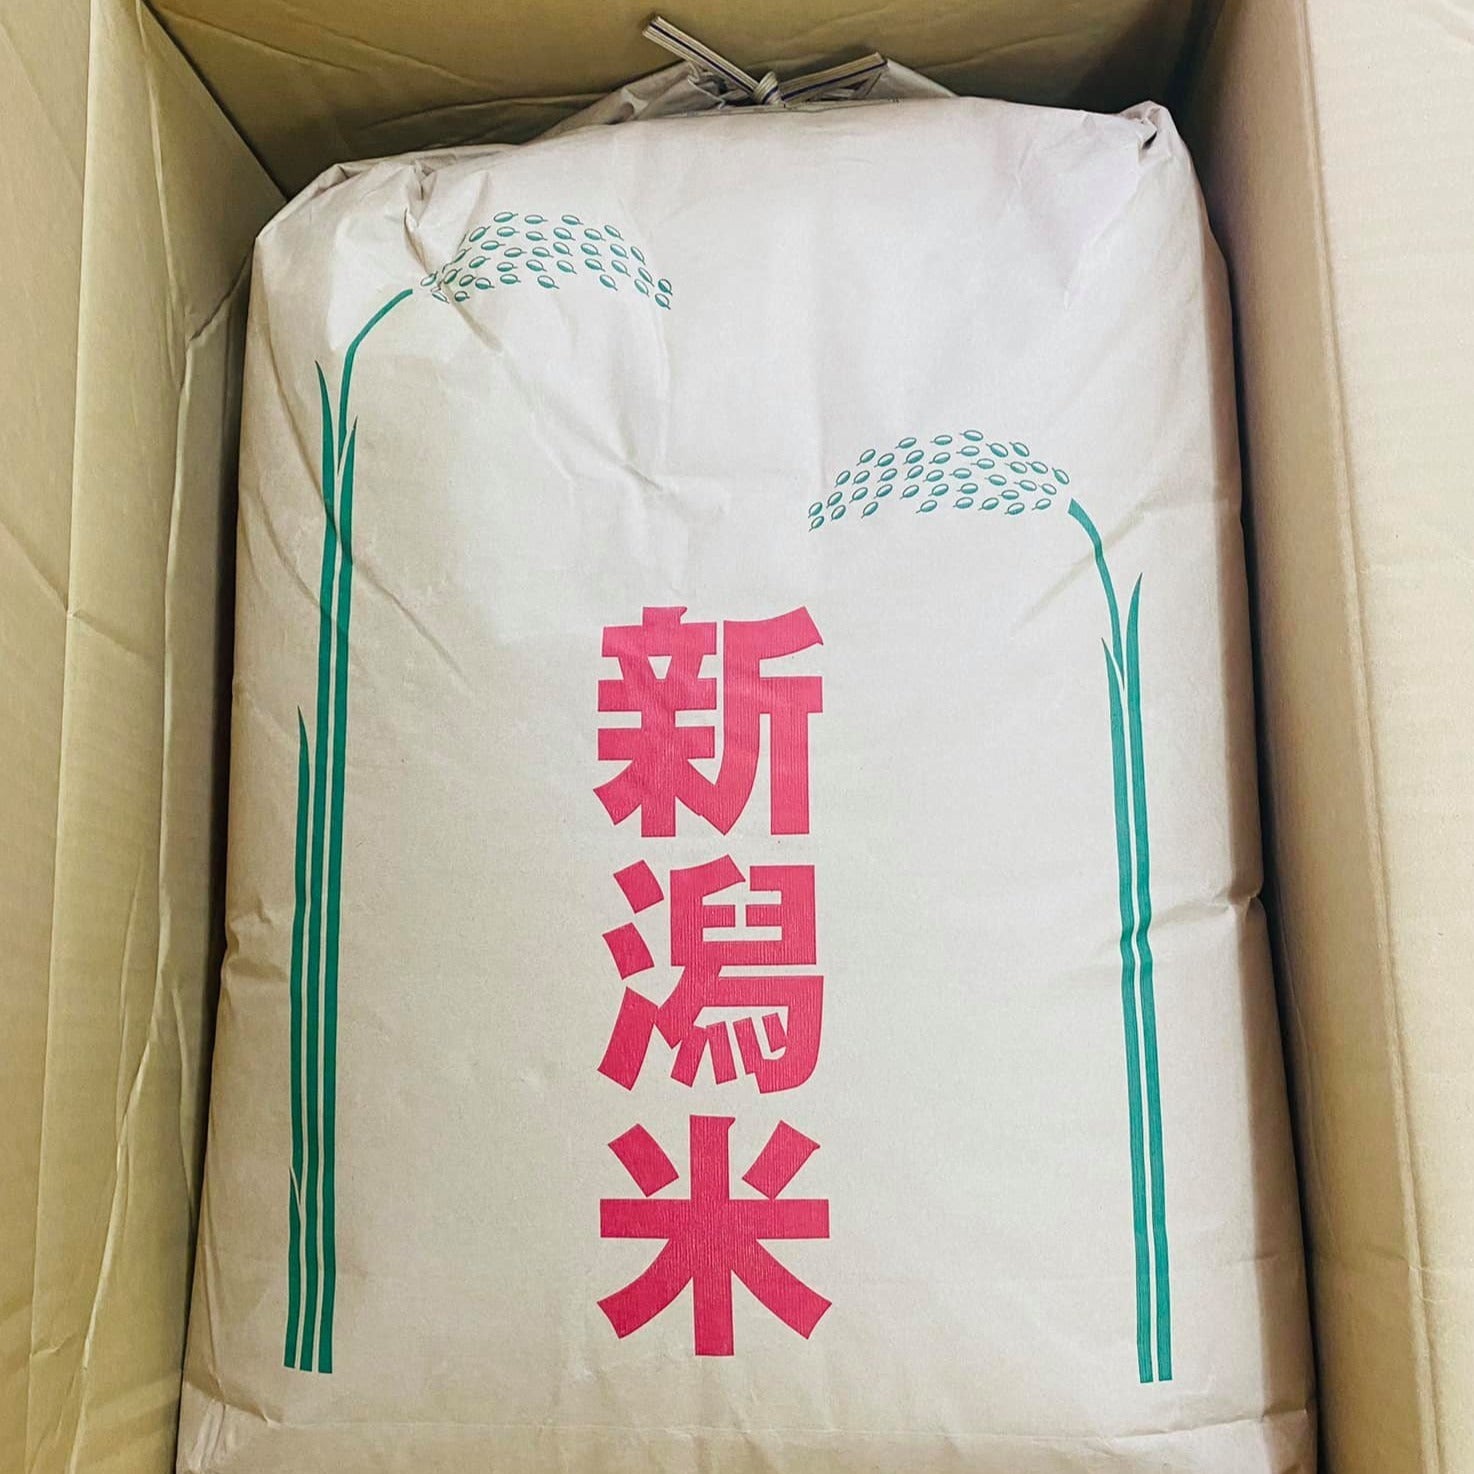 Gạo ngon đặc biệt Koshi hikari 30kg FREE SHIP